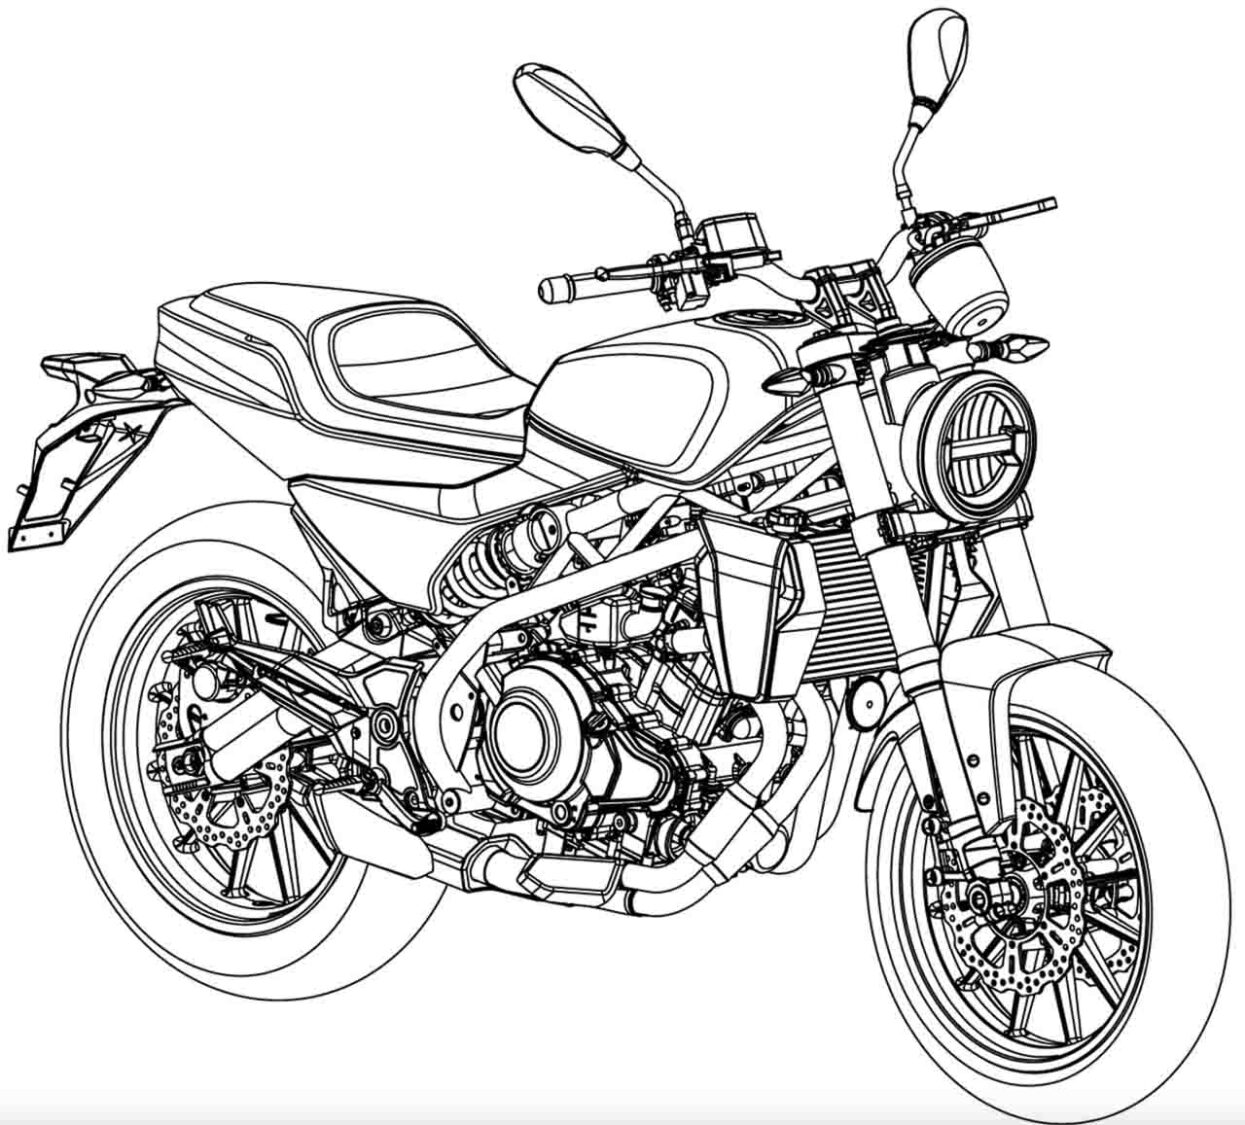 Harley Davidson 353cc Motorcycle - Design Patent